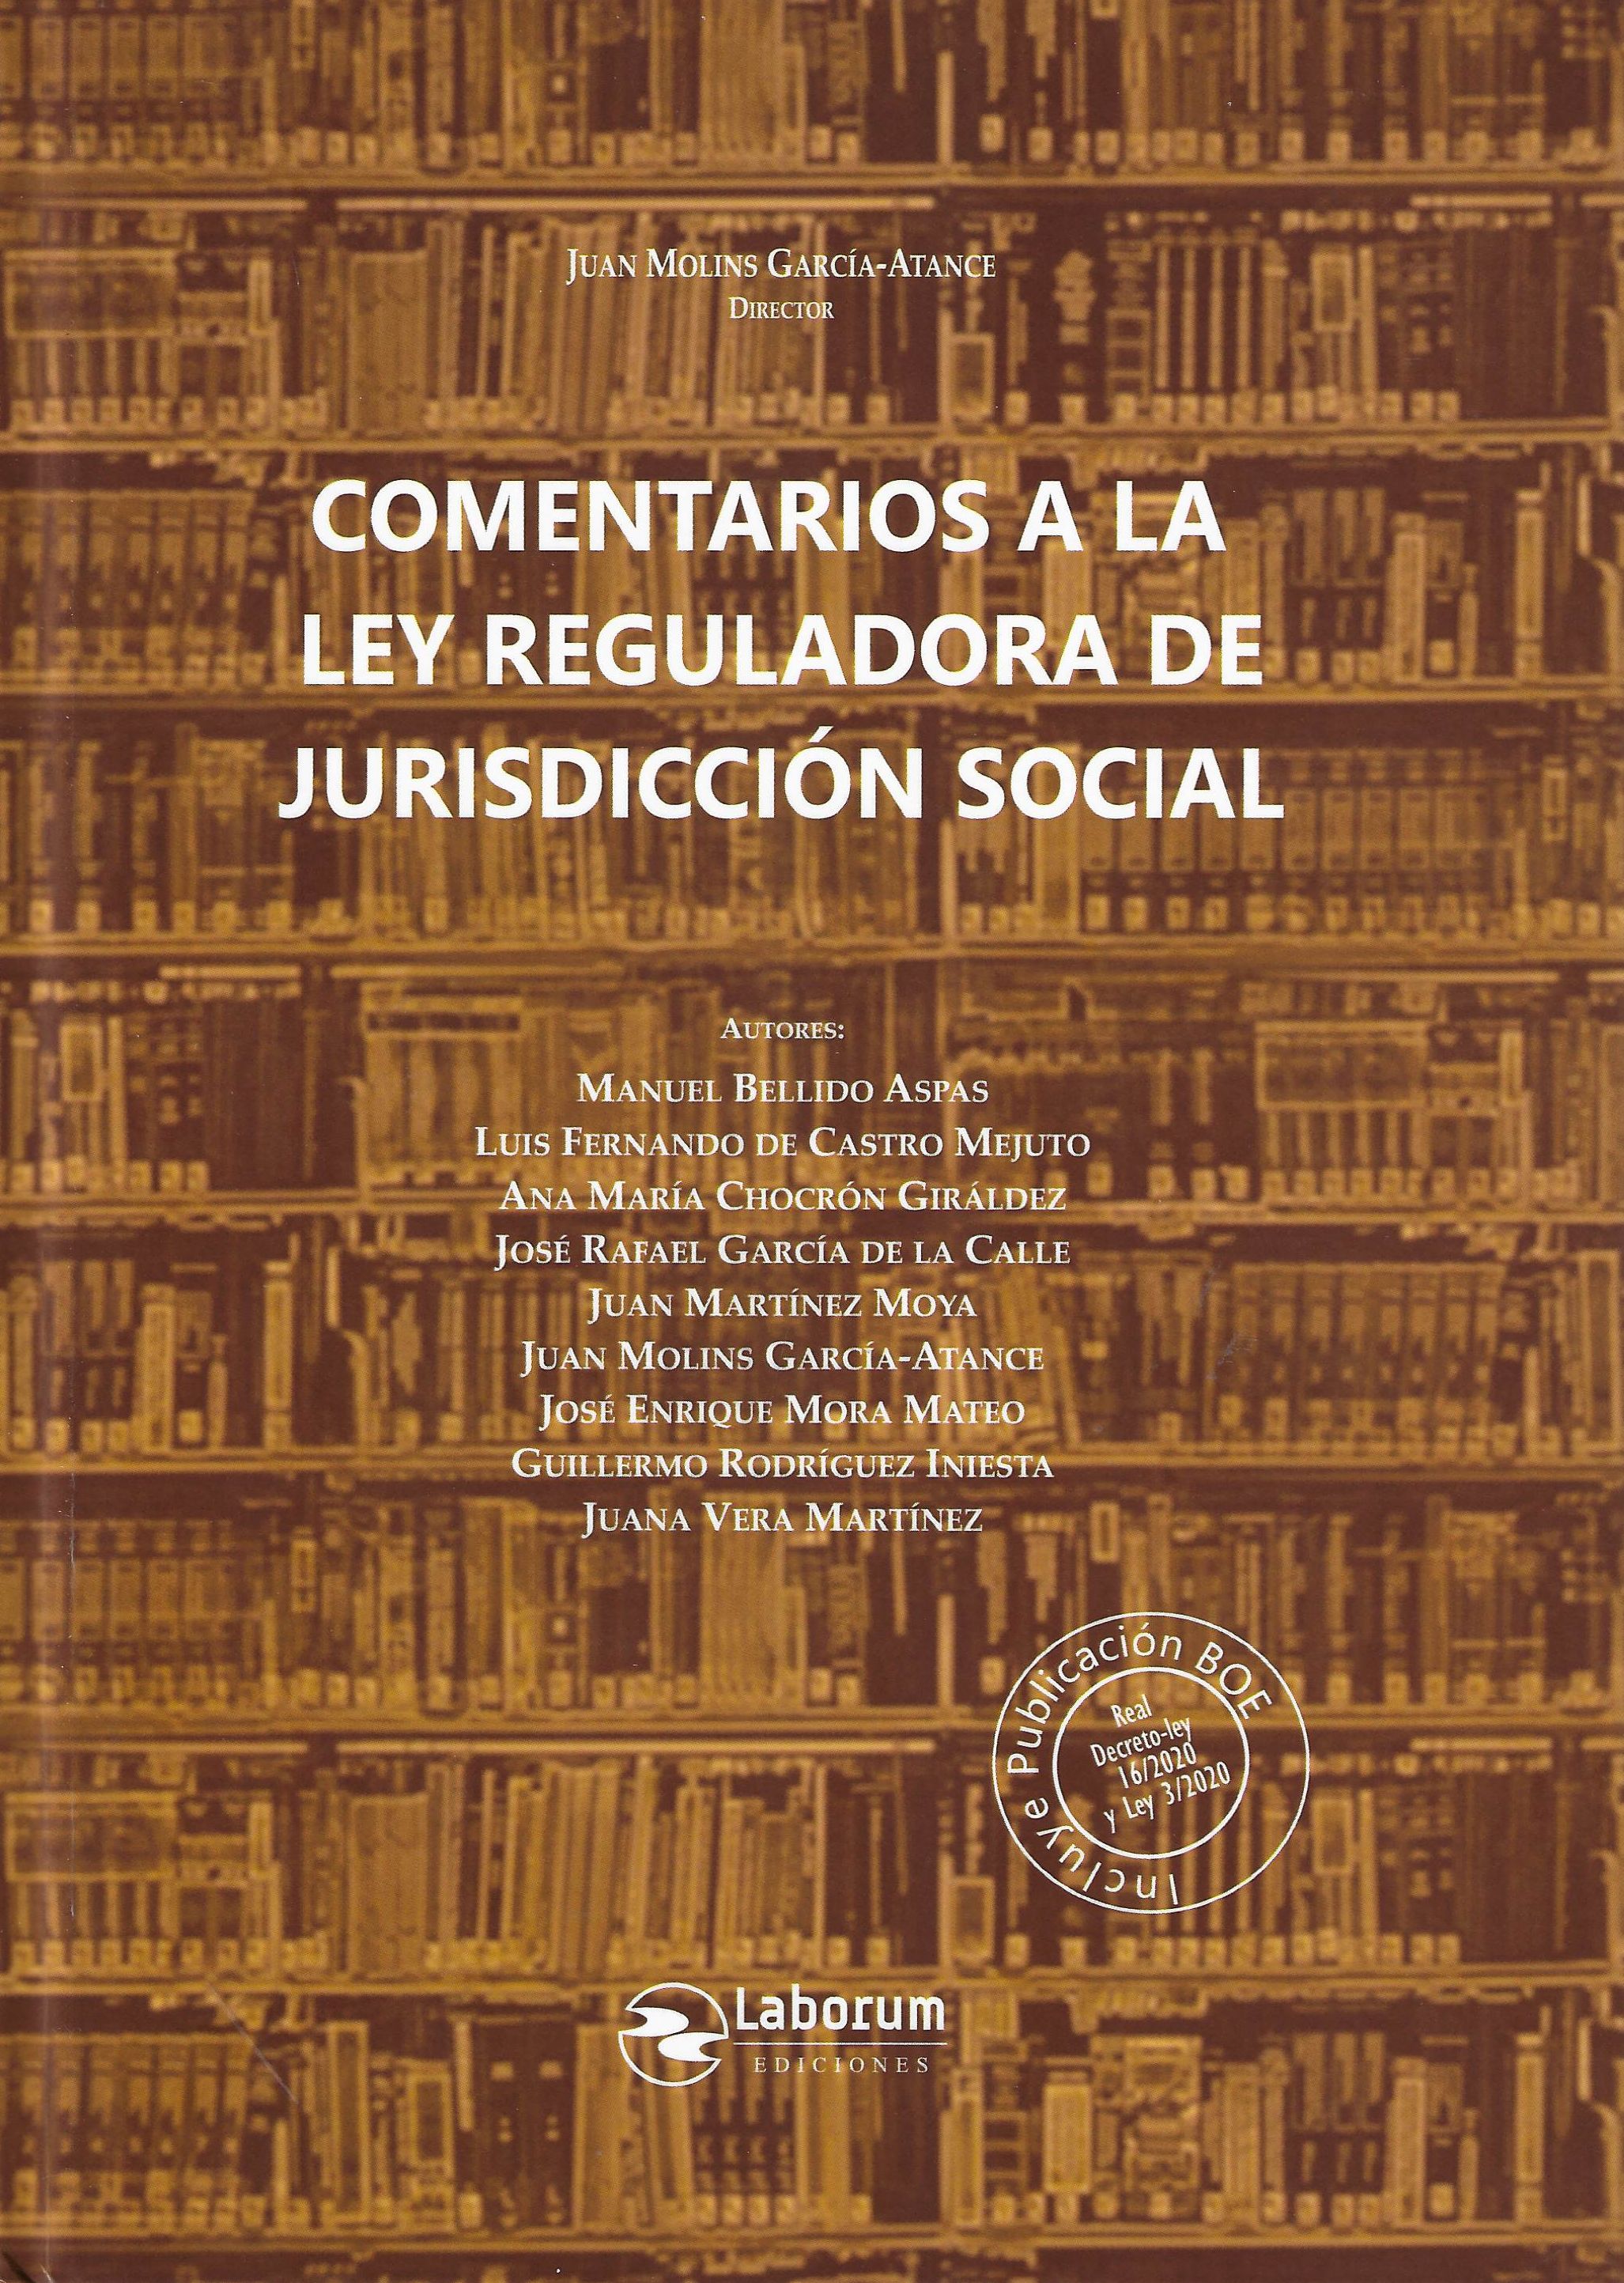 Imagen de portada del libro Comentarios a la Ley reguladora de jurisdicción social